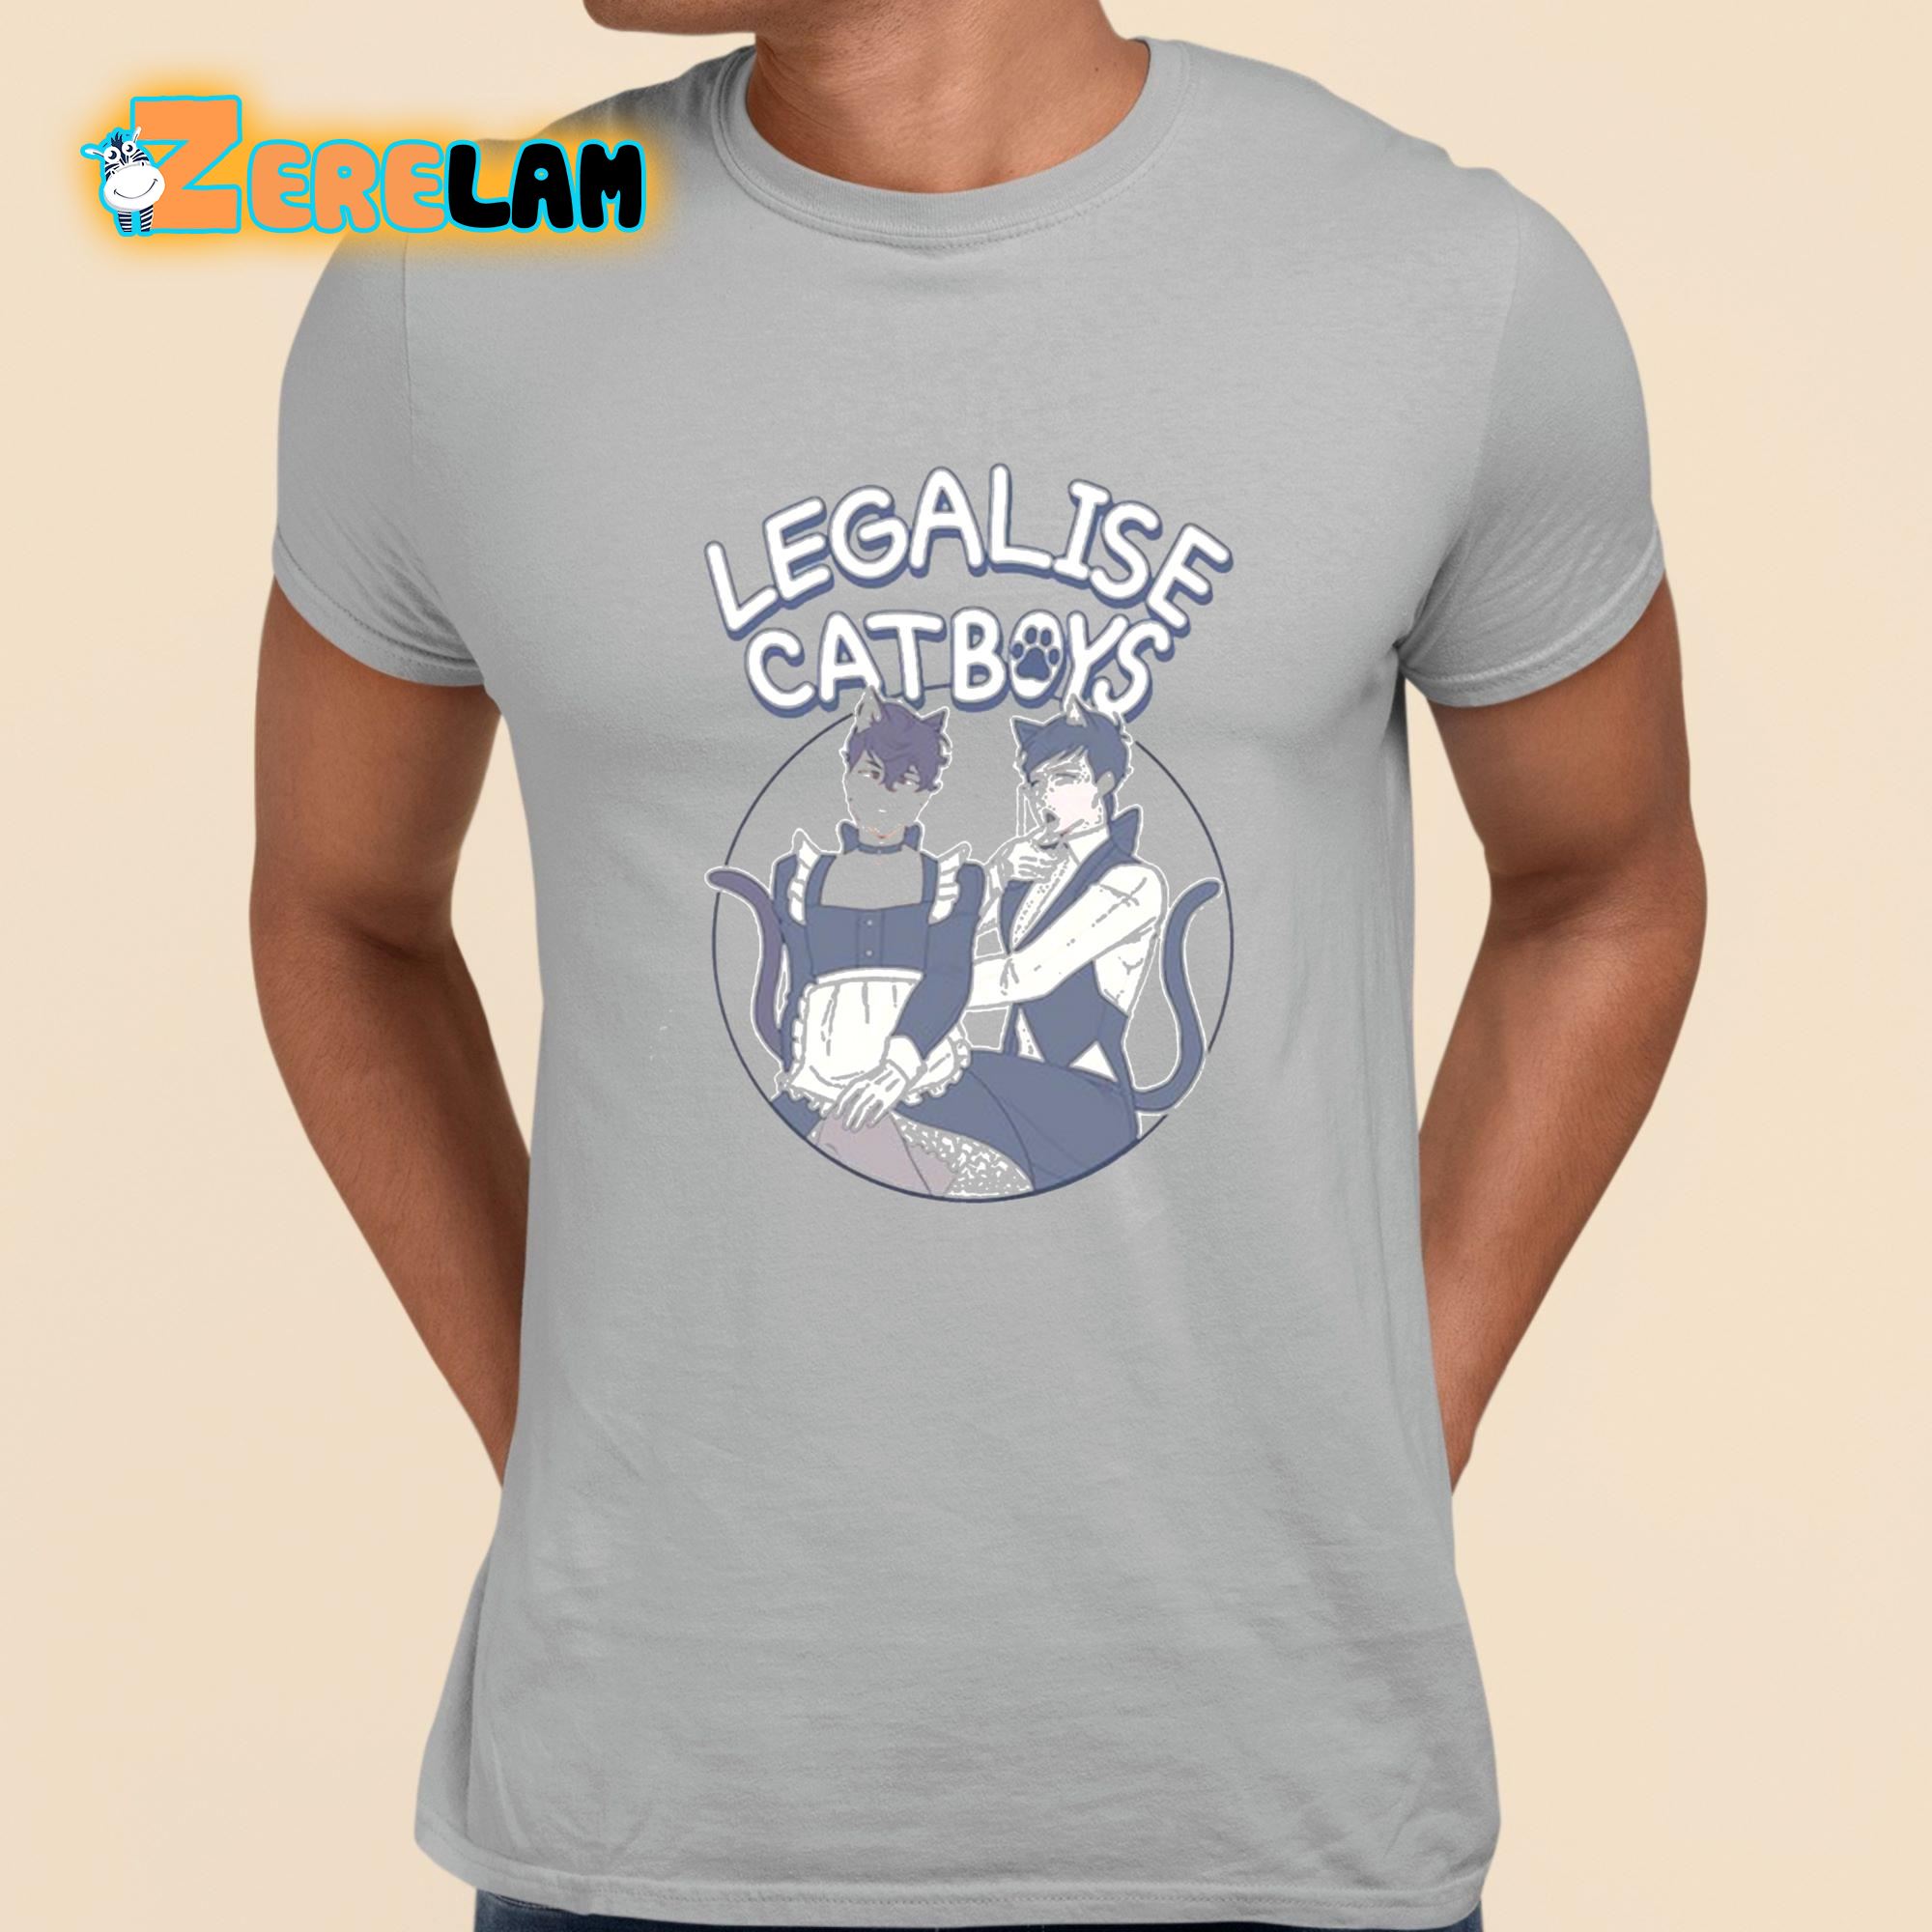 Legalise Catboys Funny Shirt grey 1